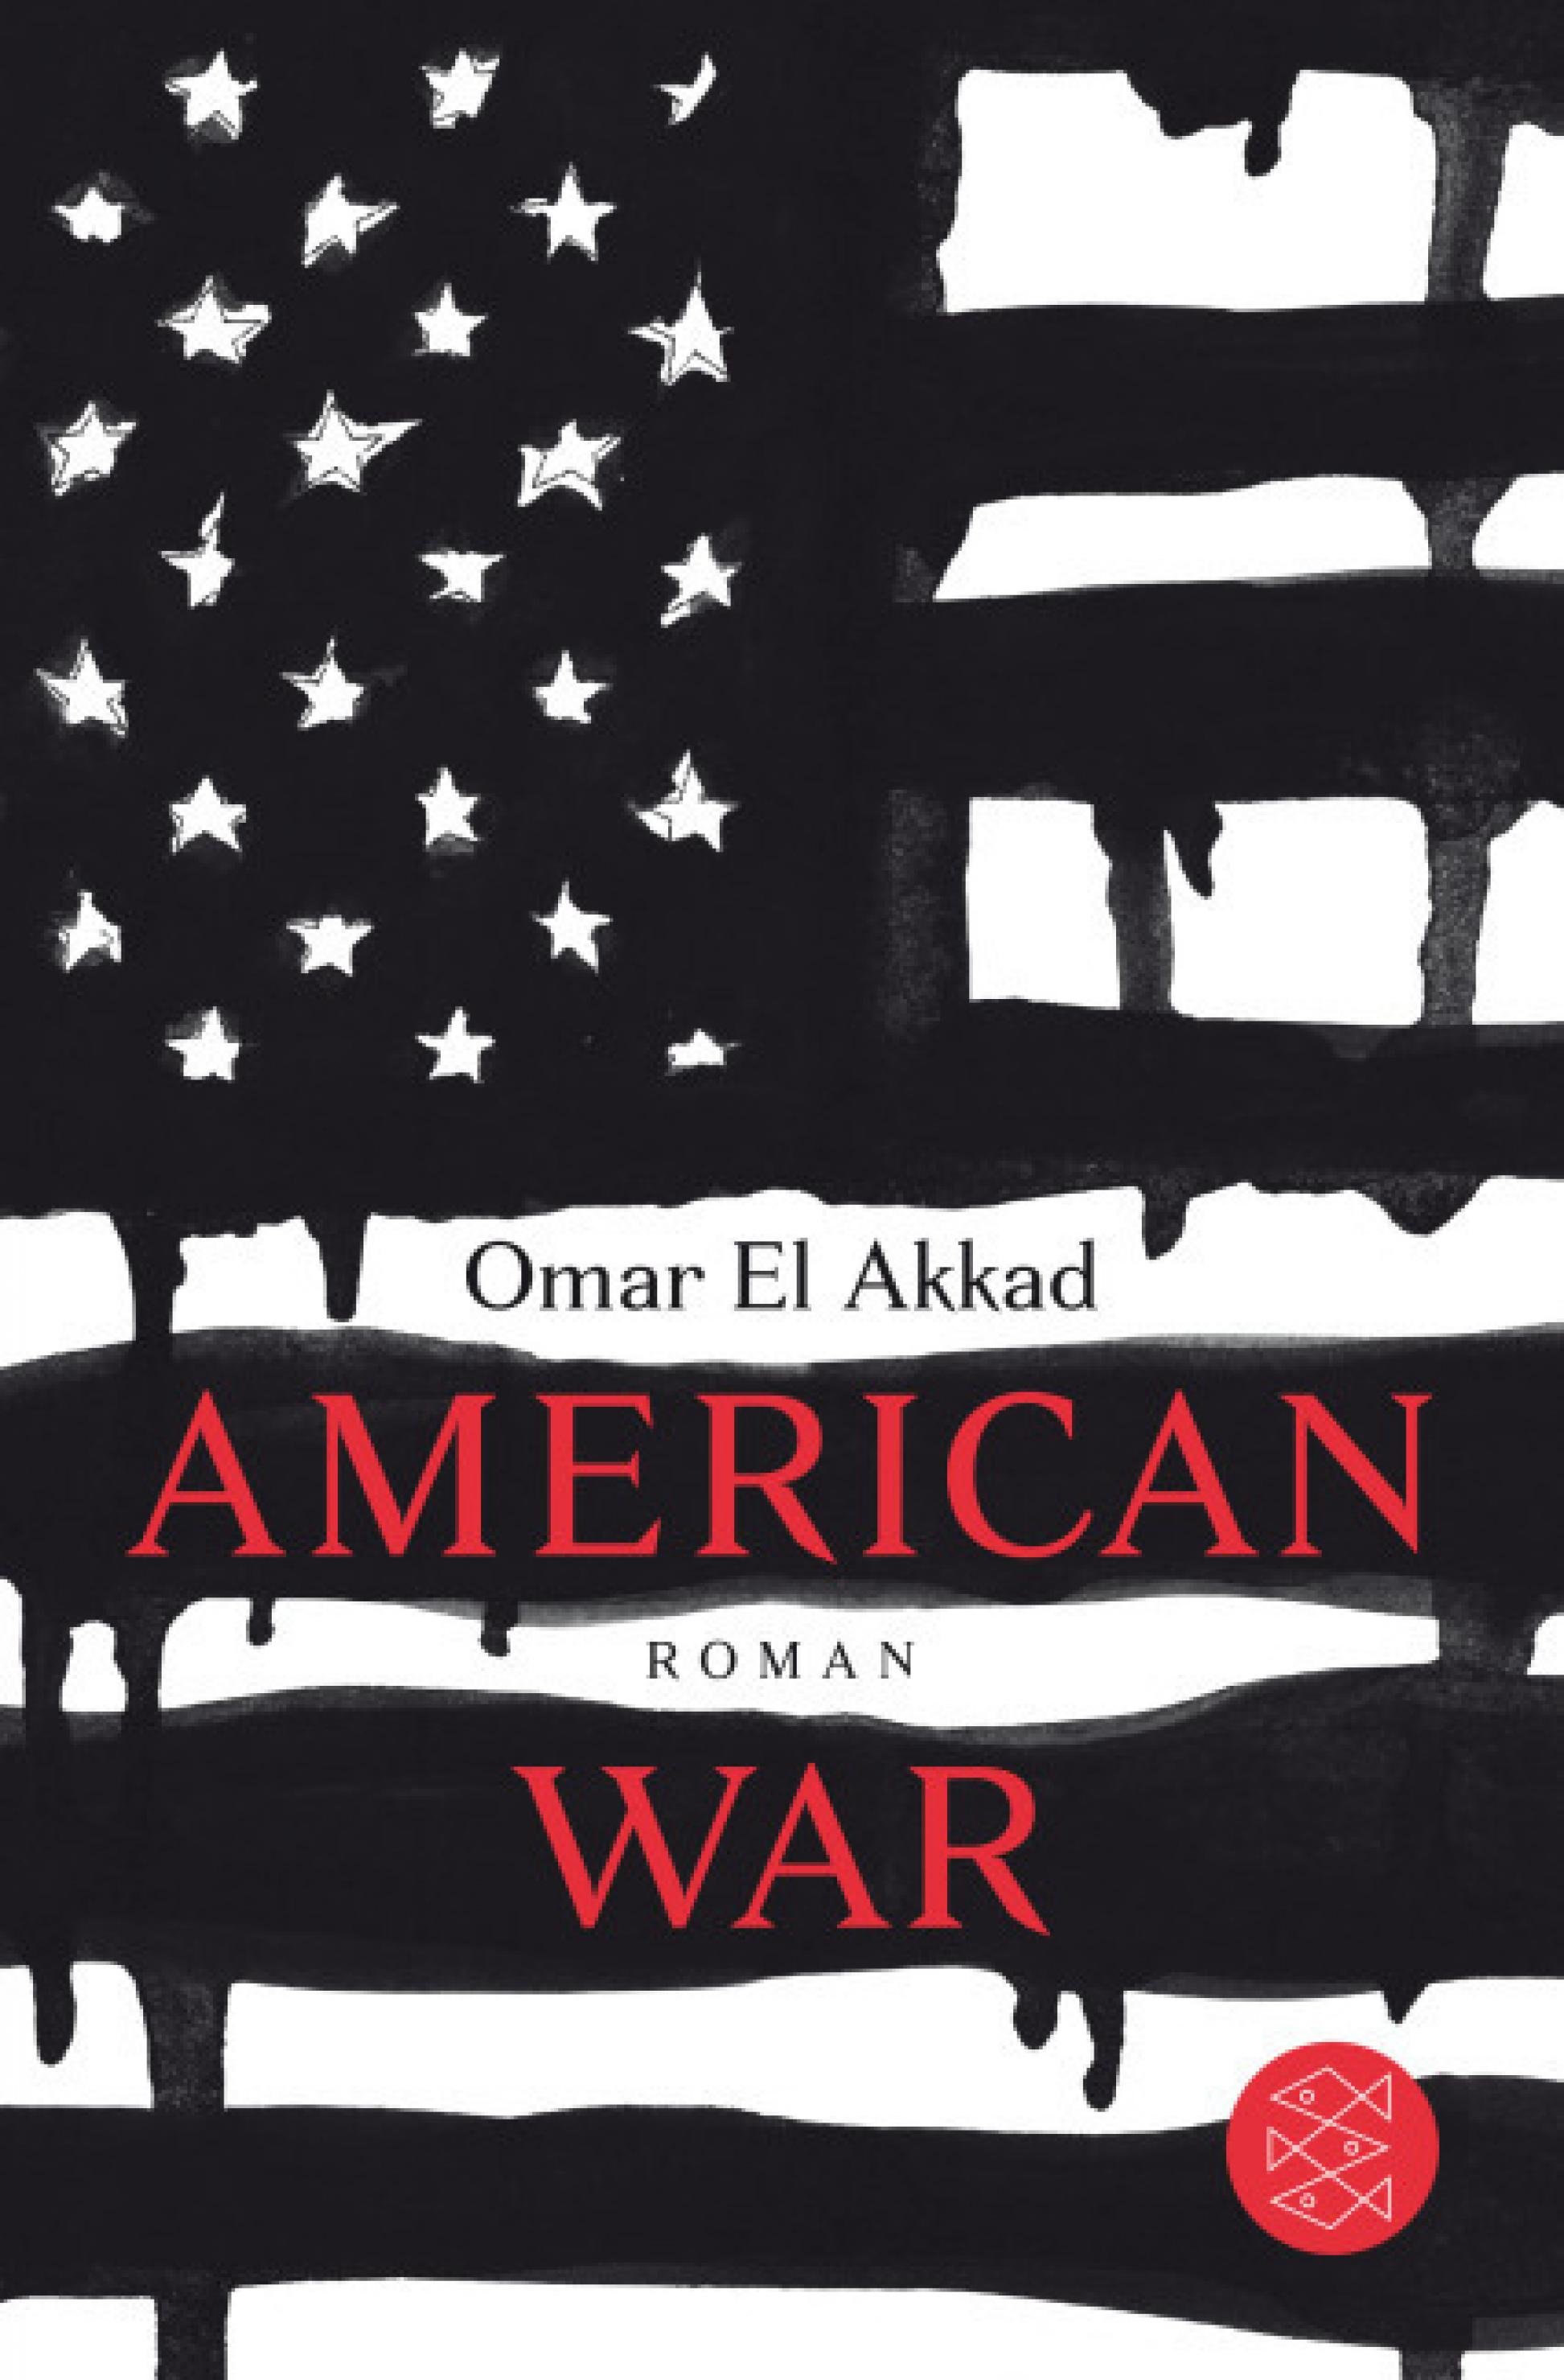 Coverfoto von American War von Omar El Akkad